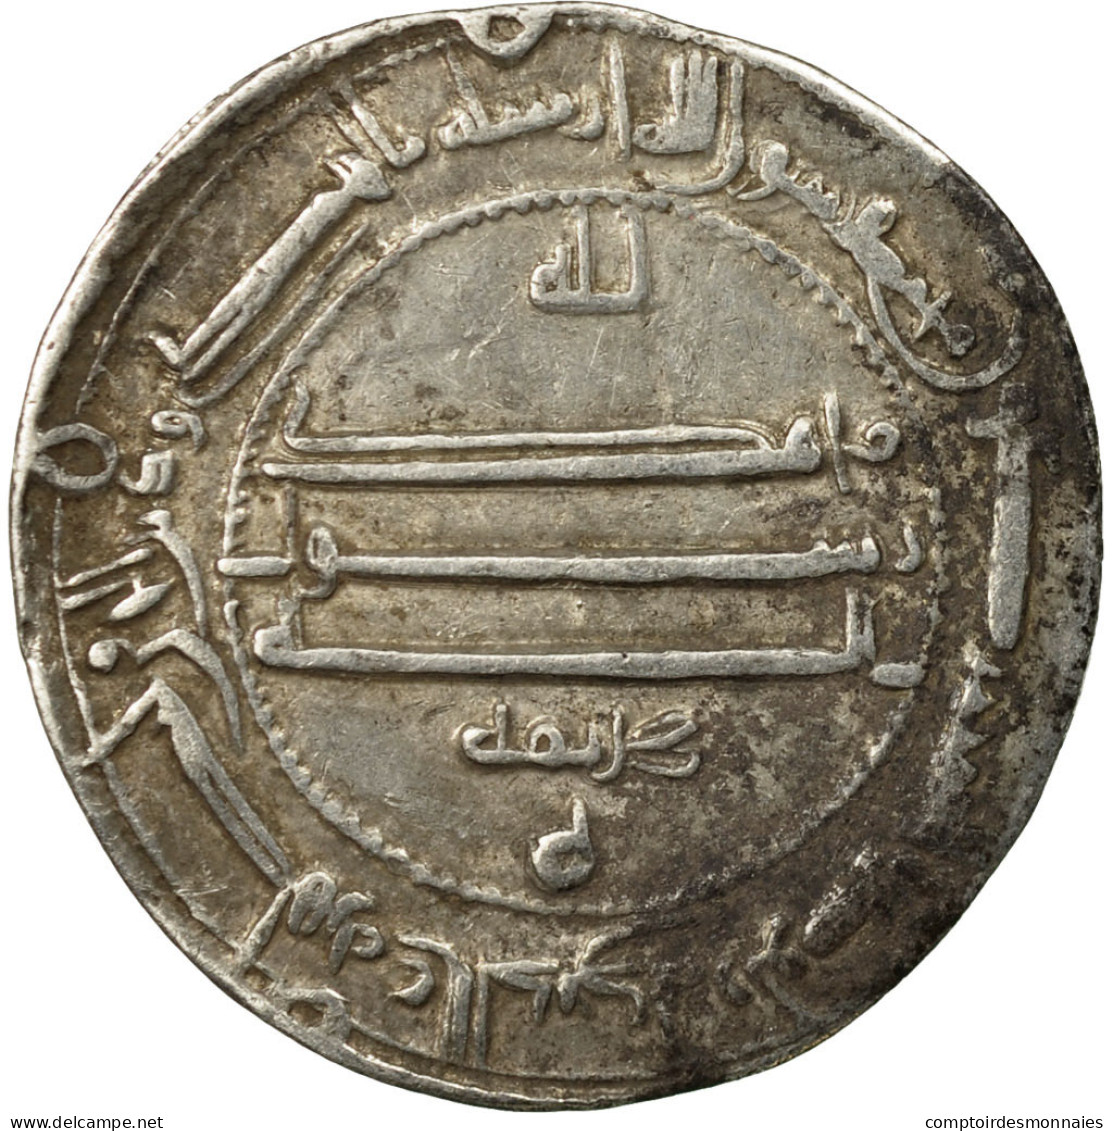 Monnaie, Califat Abbasside, Al-Maʾmun, Dirham, AH 197 (812/813 AD), Isbahan - Islamic